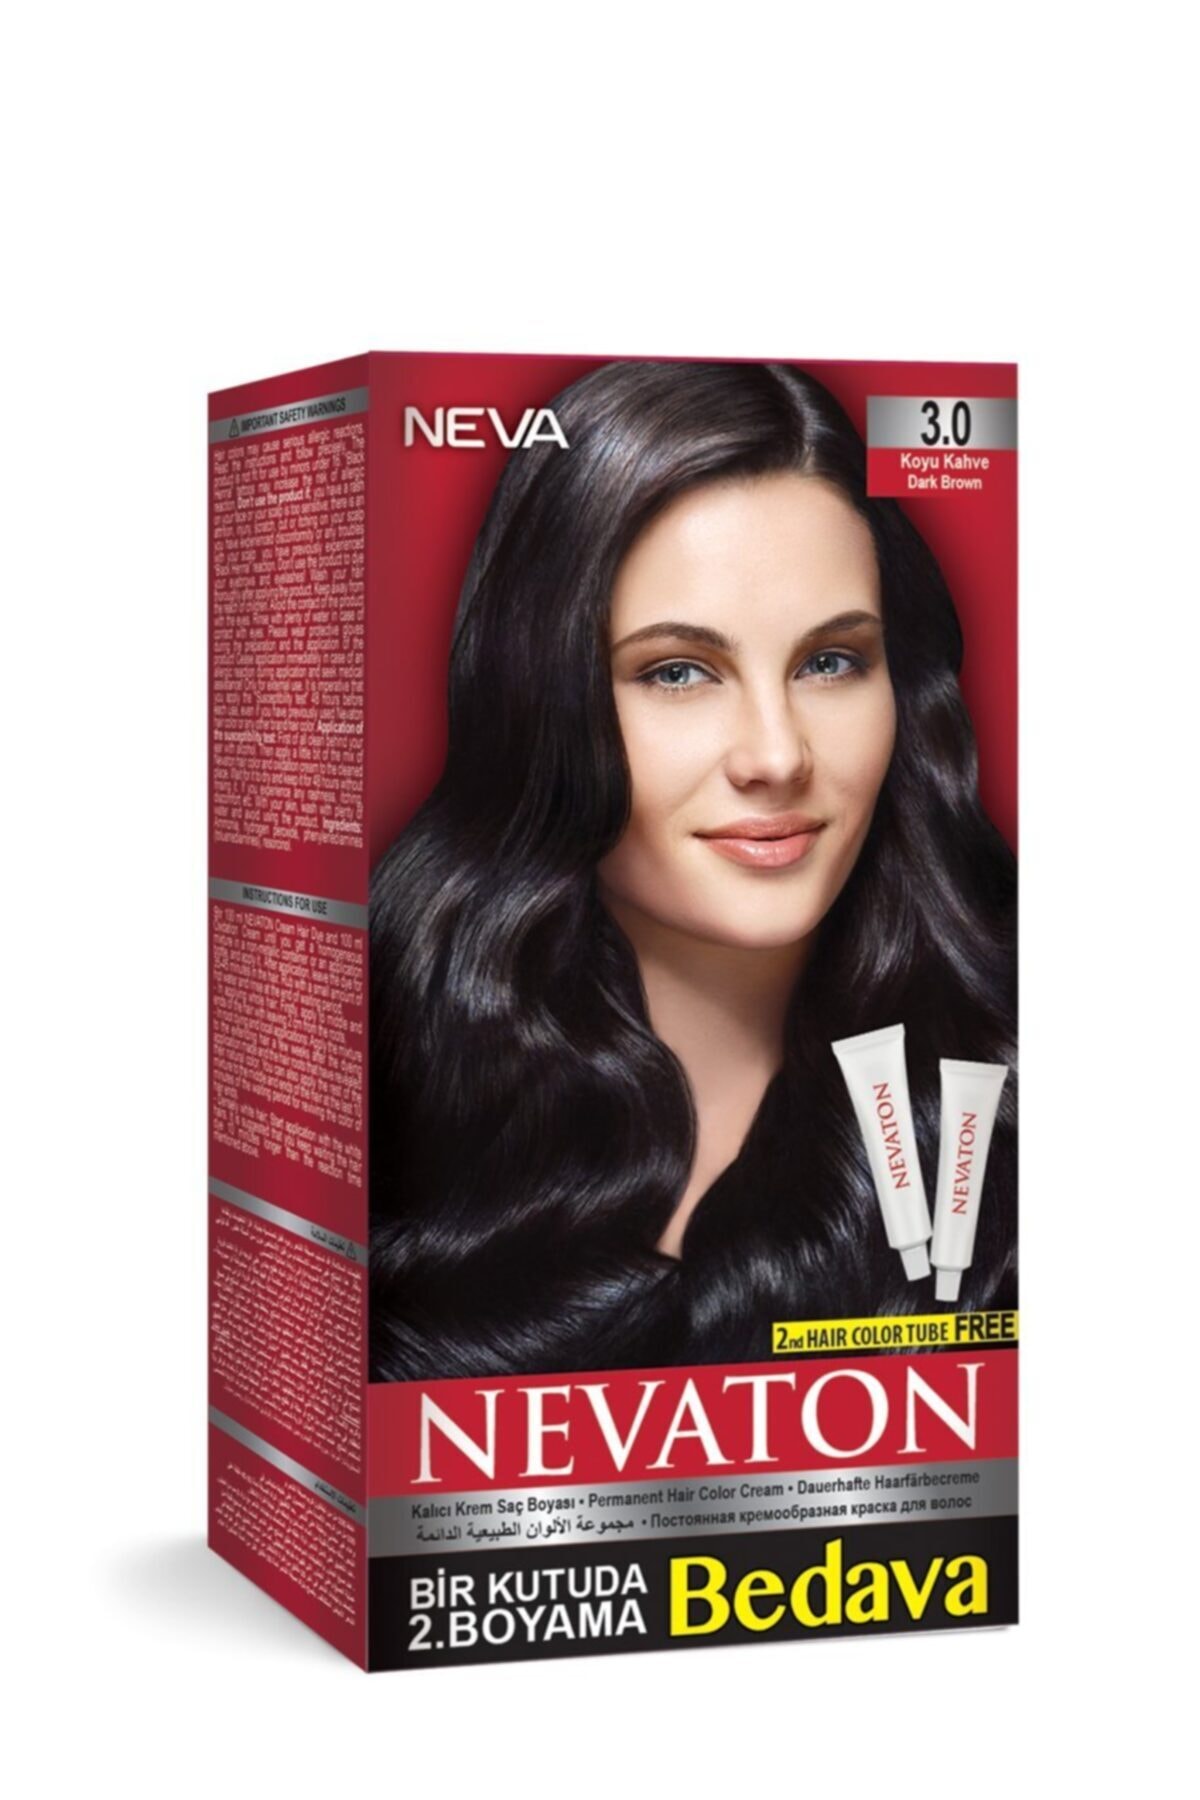 stres tortu göre  Neva Color Nevaton Kalıcı Krem Saç Boyası 3.0 Koyu Kahve Fiyatı, Yorumları  - TRENDYOL